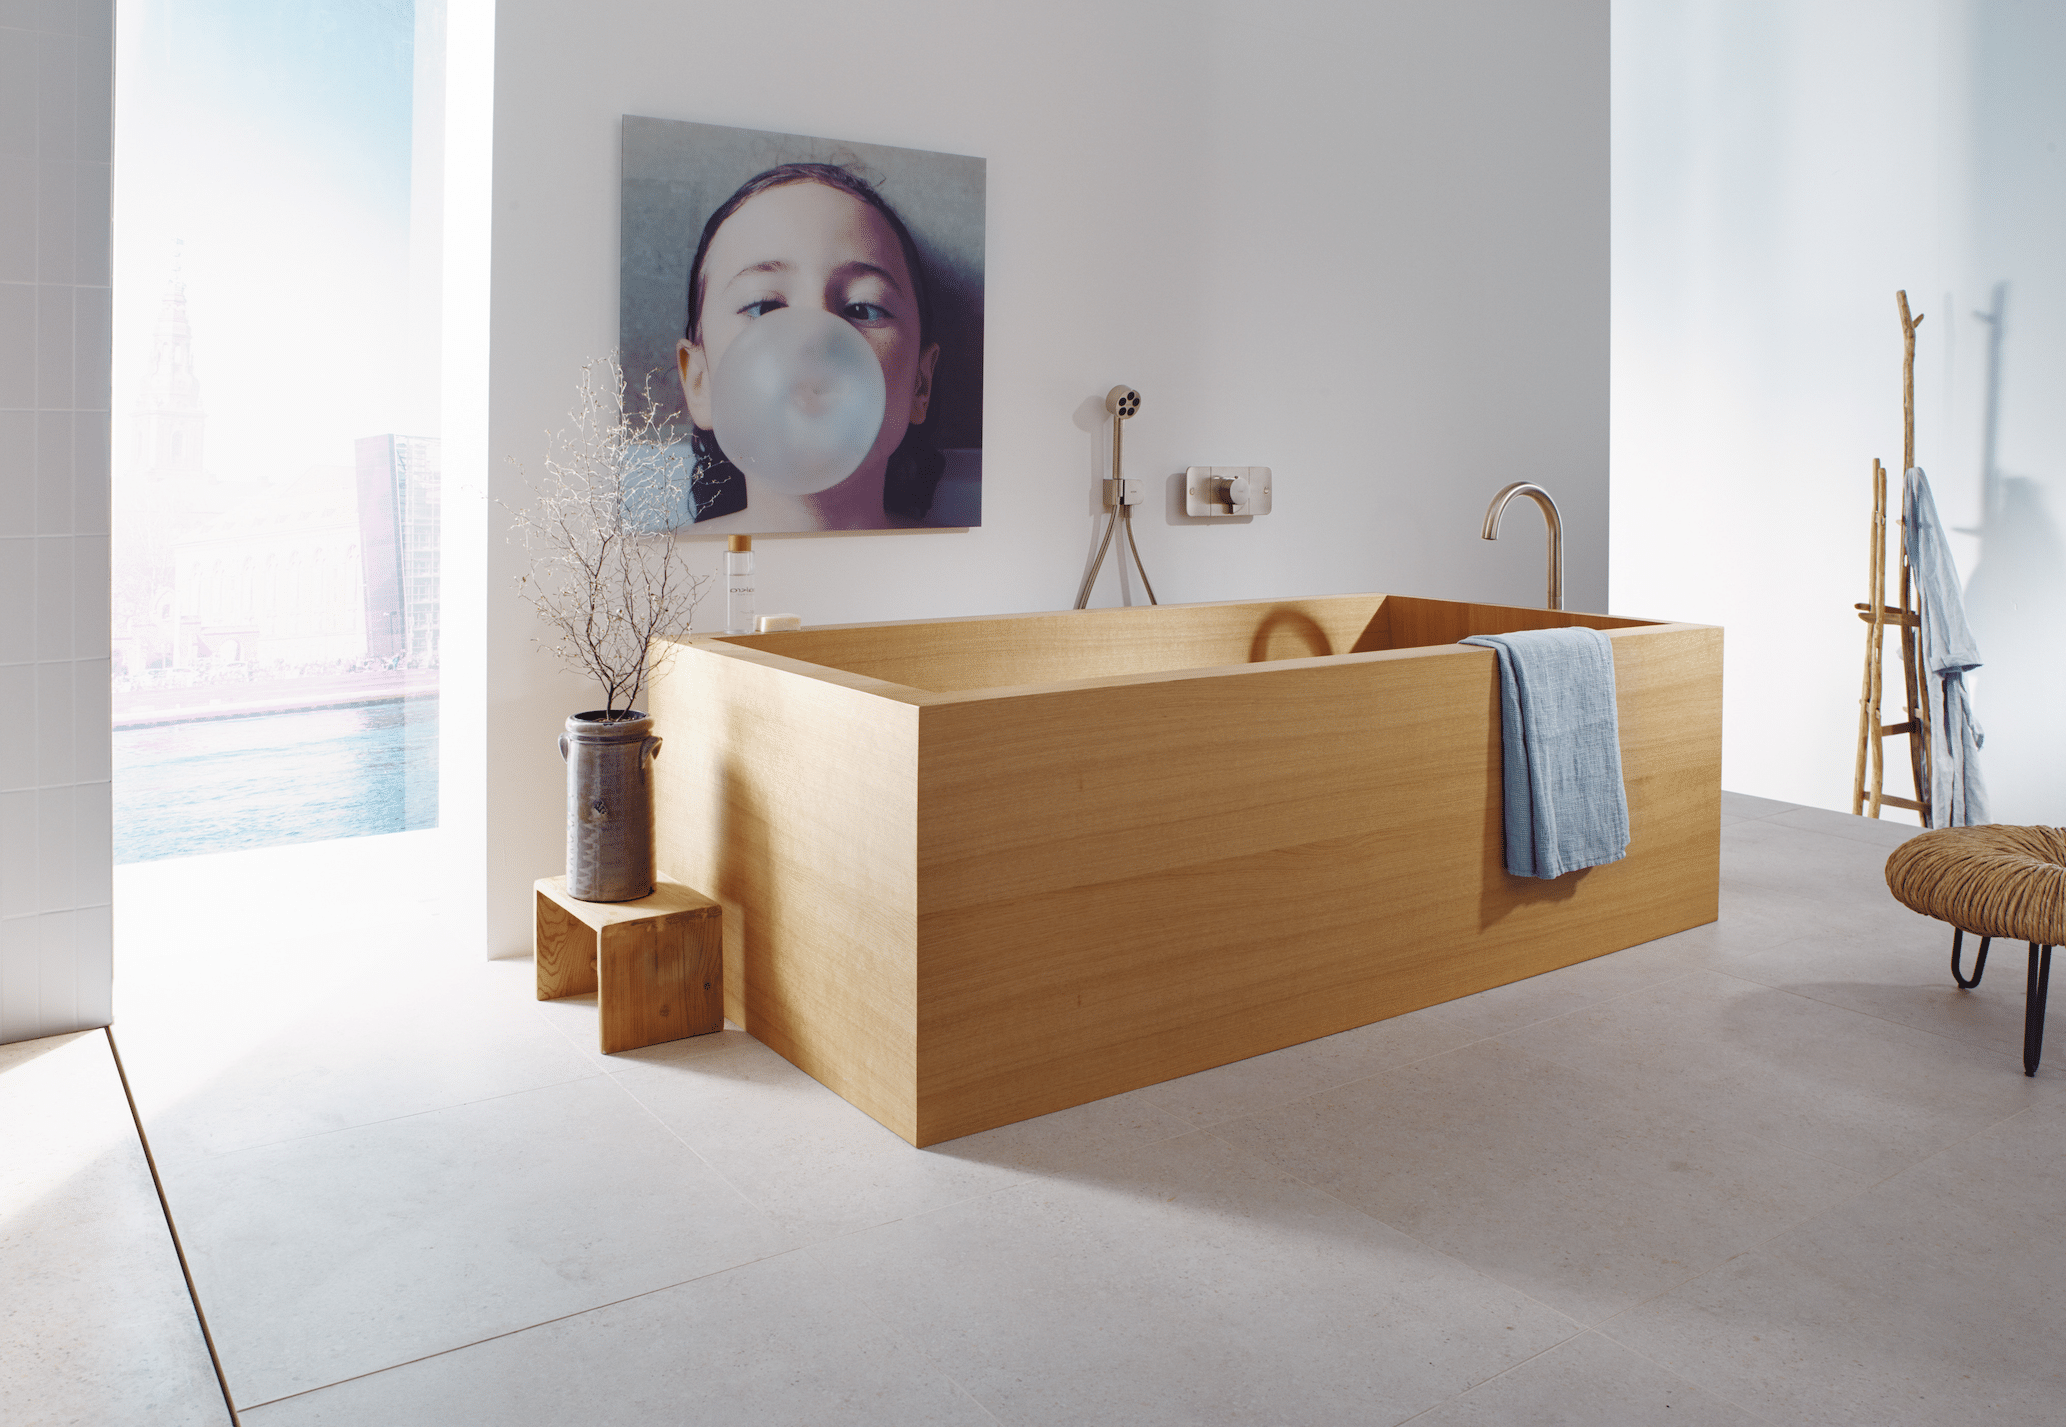 Hansgrohe präsentiert eine Badewanne in heller Holzoptik mit rose-goldener Armatur und einem Bild von einem Mädchen mit einer großen Kaugummiblase.